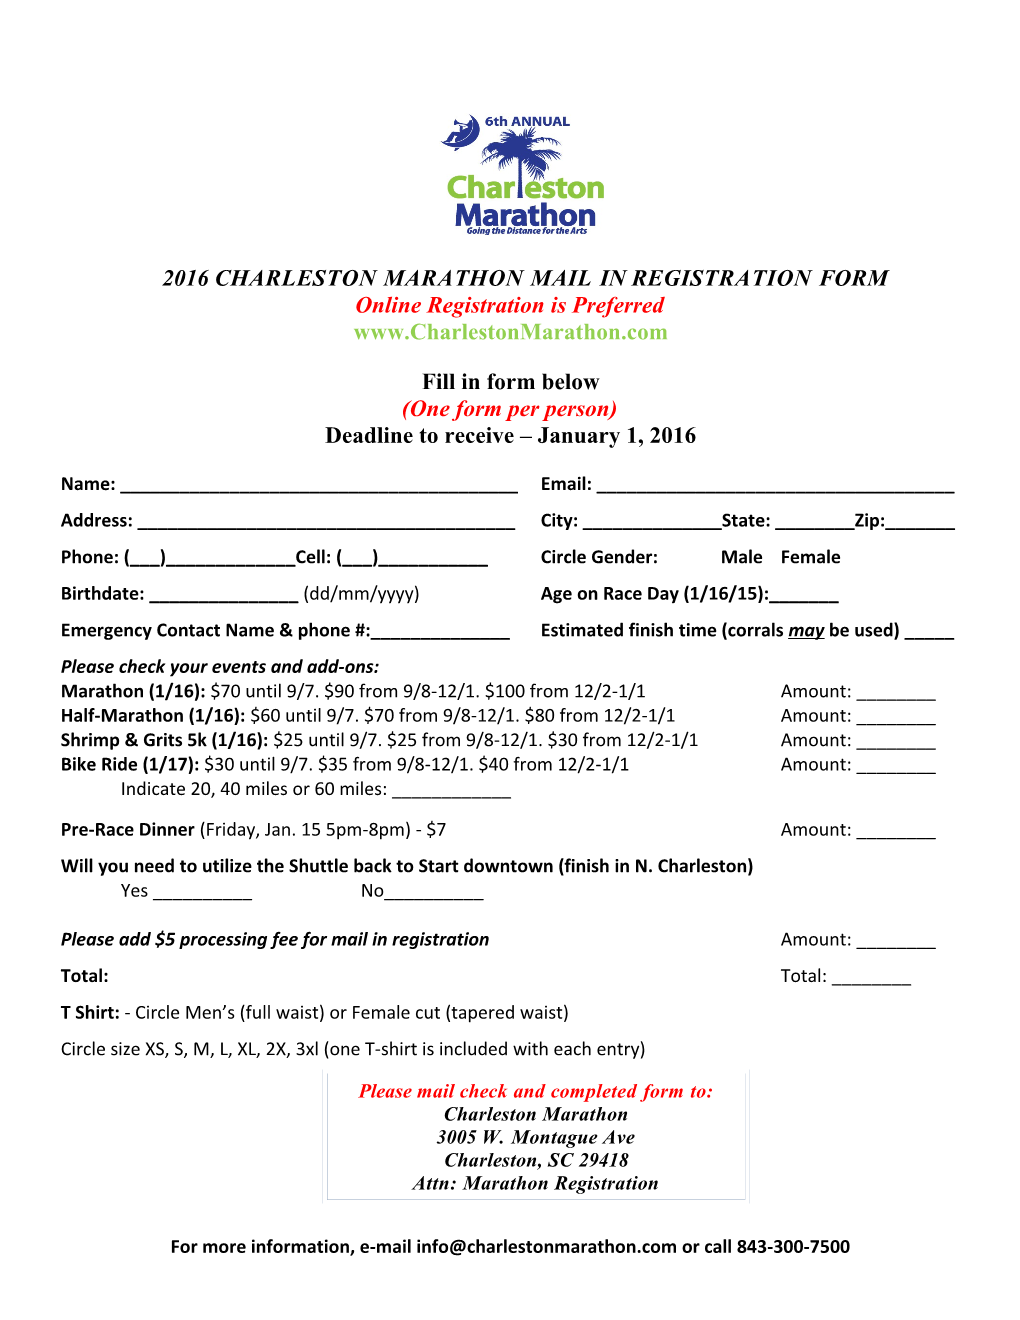 2016 Charleston Marathon Mail in Registration Form